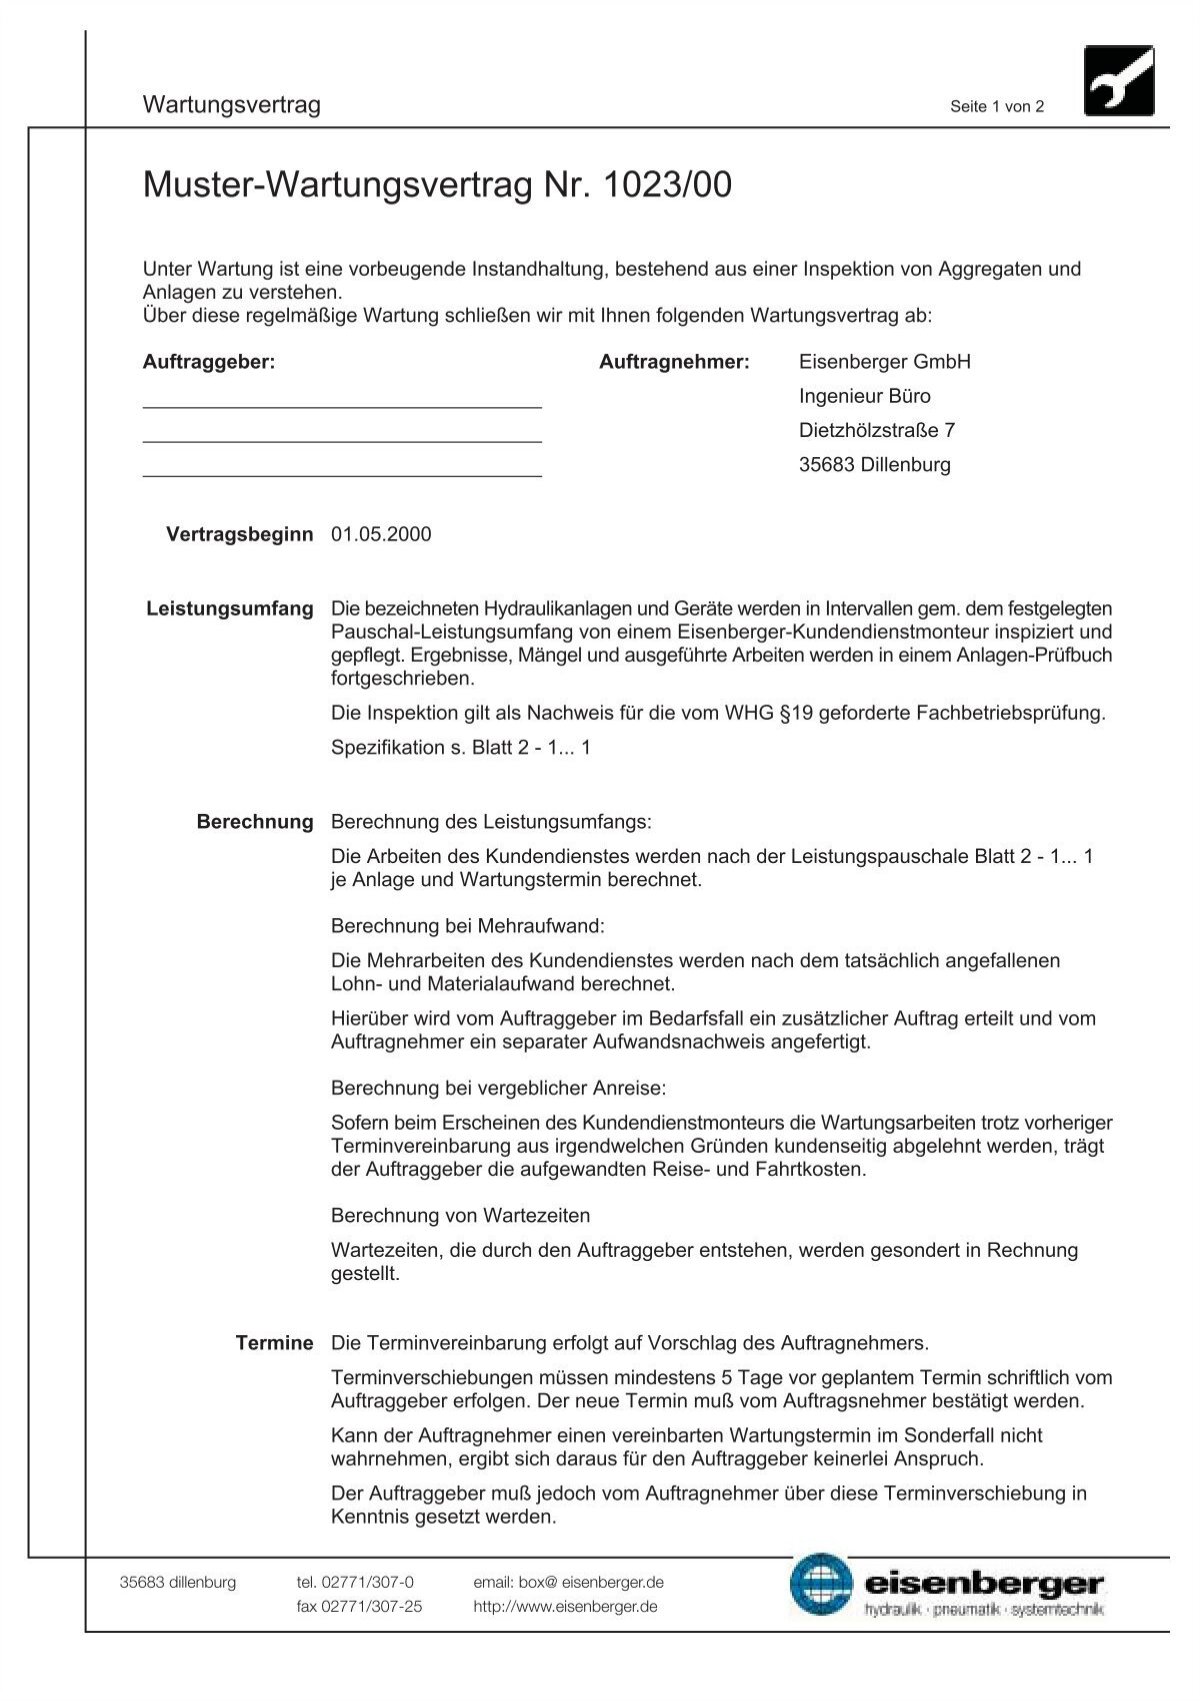 Muster-Wartungsvertrag Nr. 1023/00 - eisenberger gmbh